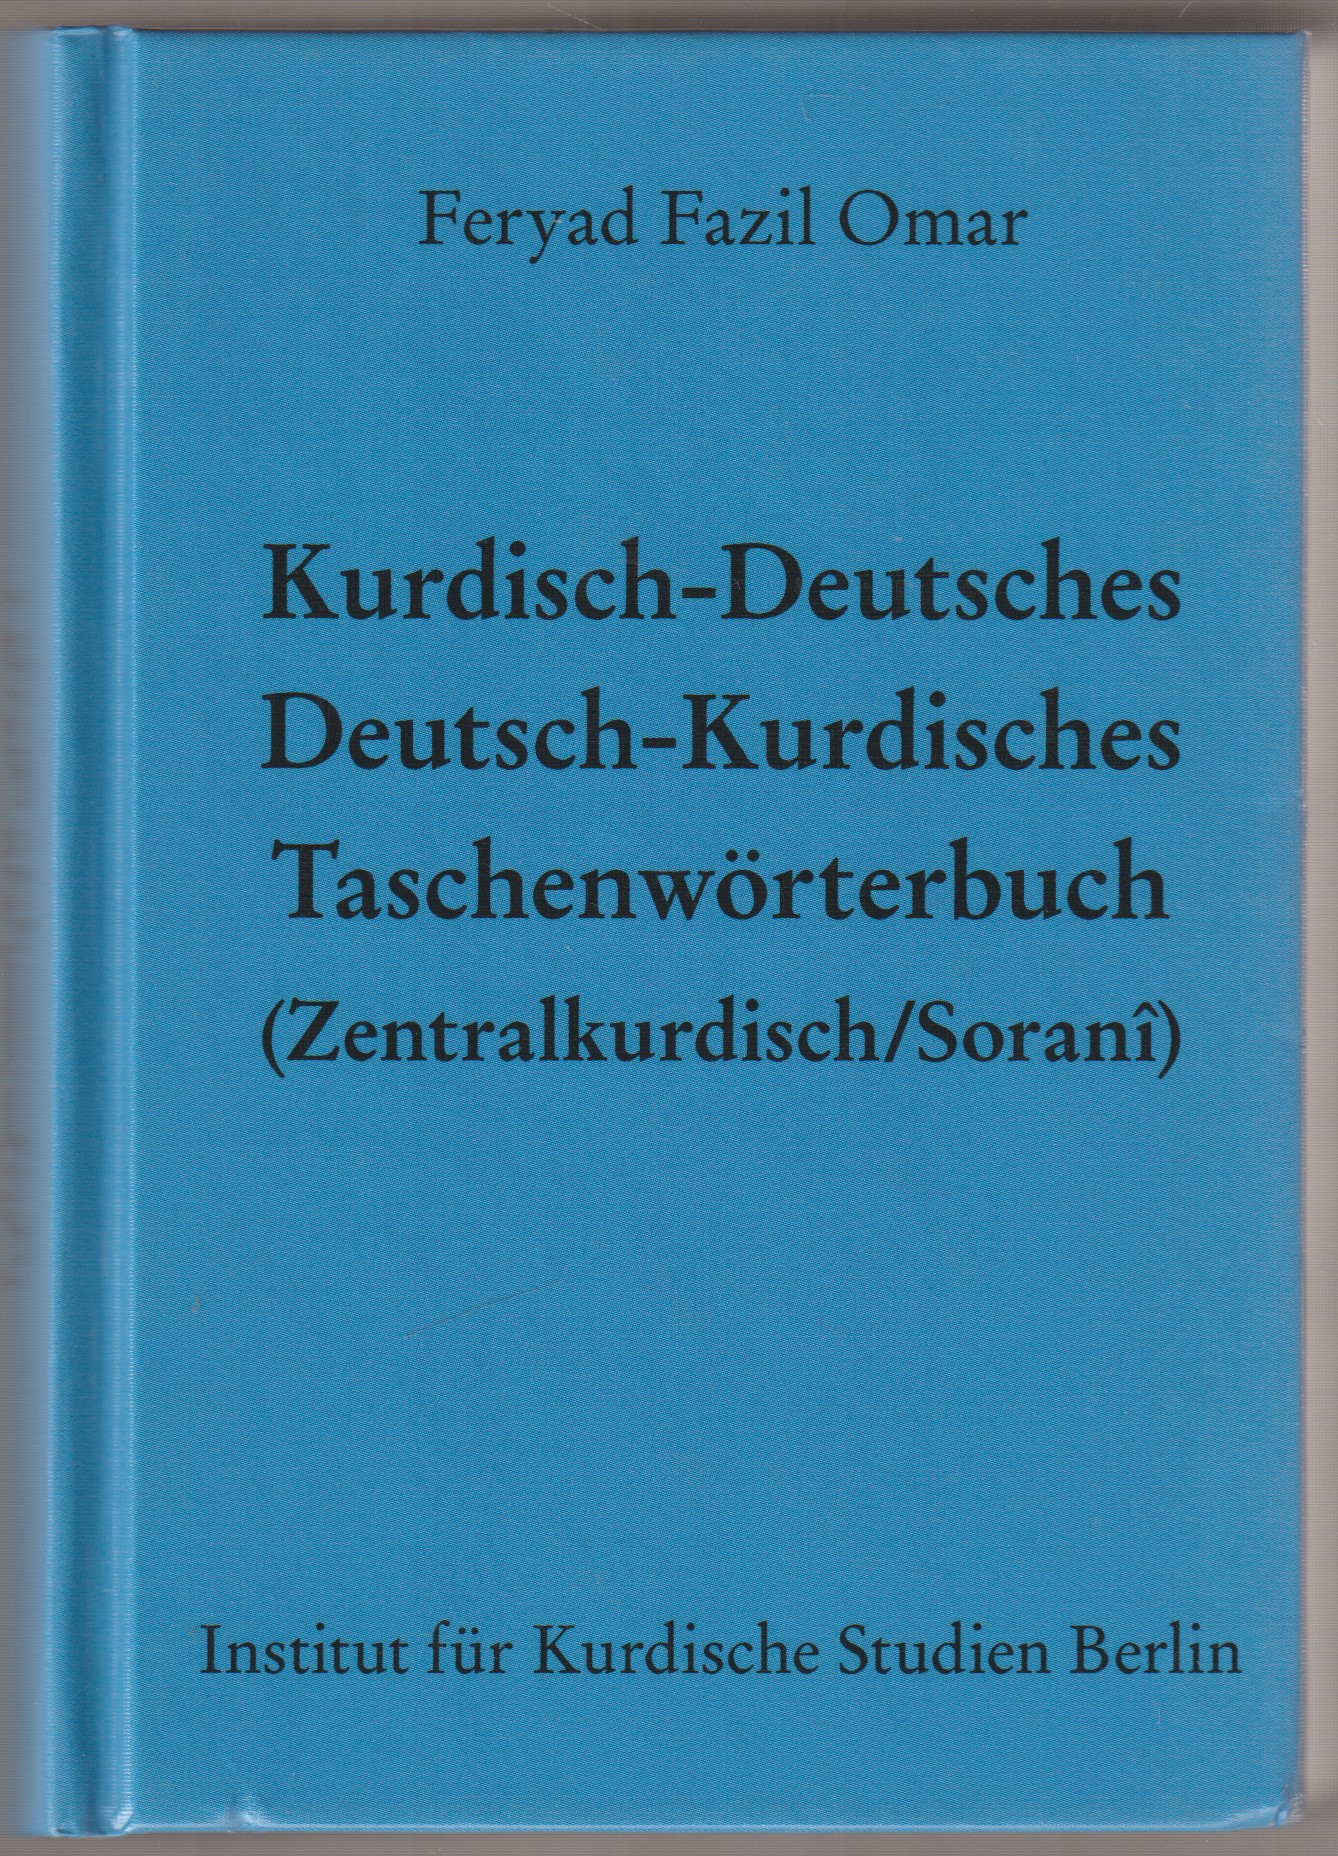 Kurdisch-Deutsches/Deutsch-Kurdisches Taschenworterbuch (Zentralkurdisch/Sorani)